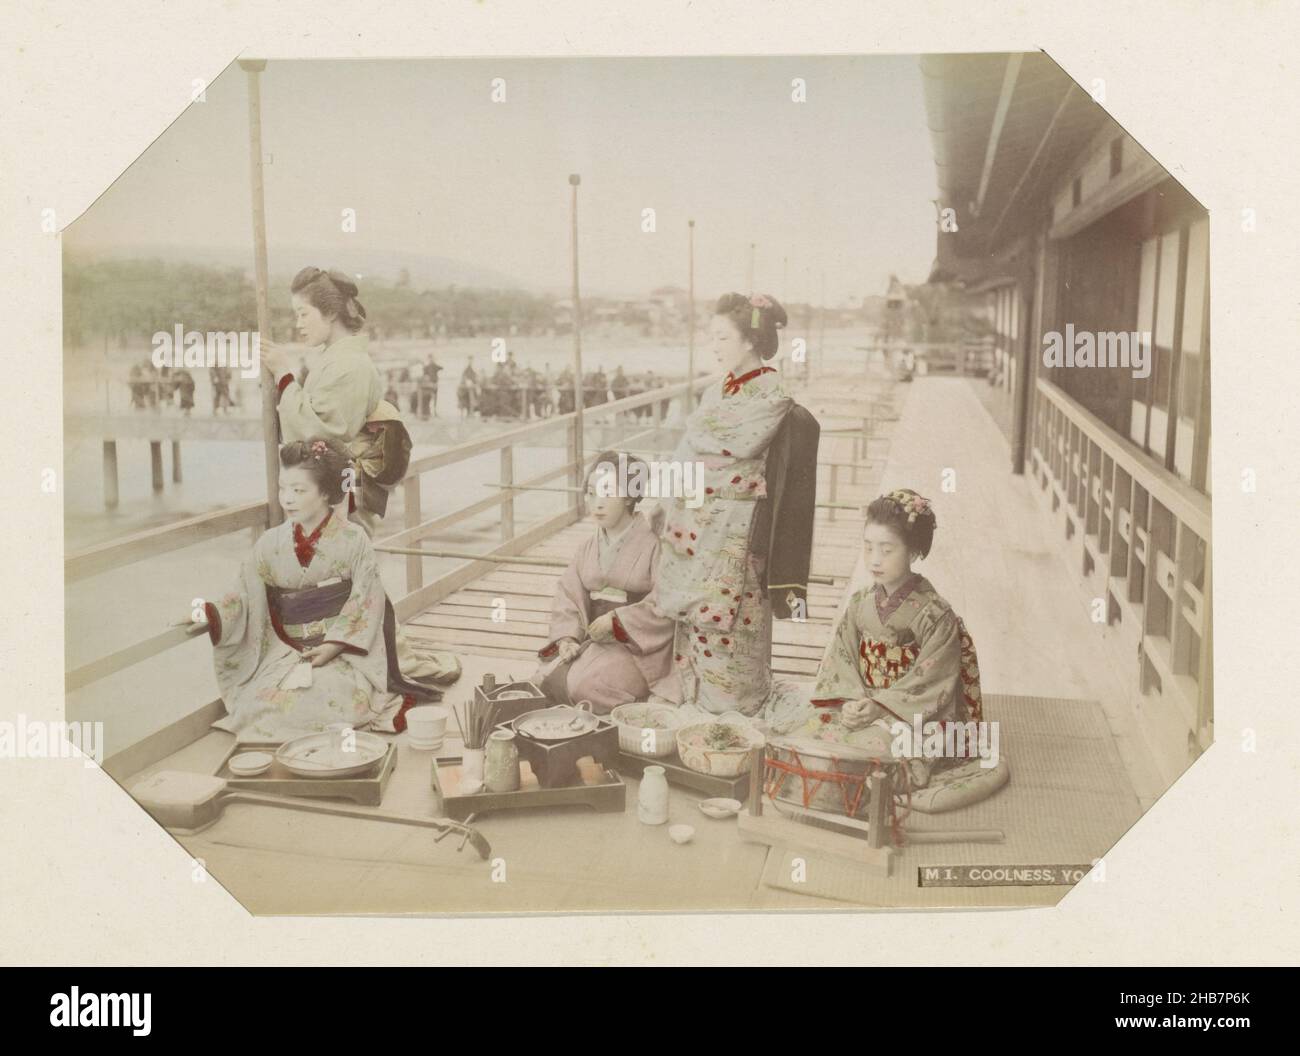 Portrait de groupe de cinq femmes japonaises à un repas à Kyoto, cool, Yojio, Kyoto (titre sur objet), partie de photo album d'enregistrements de sites au Japon et portraits de studio., anonyme, Kyoto, c.1870 - c.1900, support photographique, peinture (revêtement), imprimé albumine, hauteur 199 mm × largeur 266 mm Banque D'Images